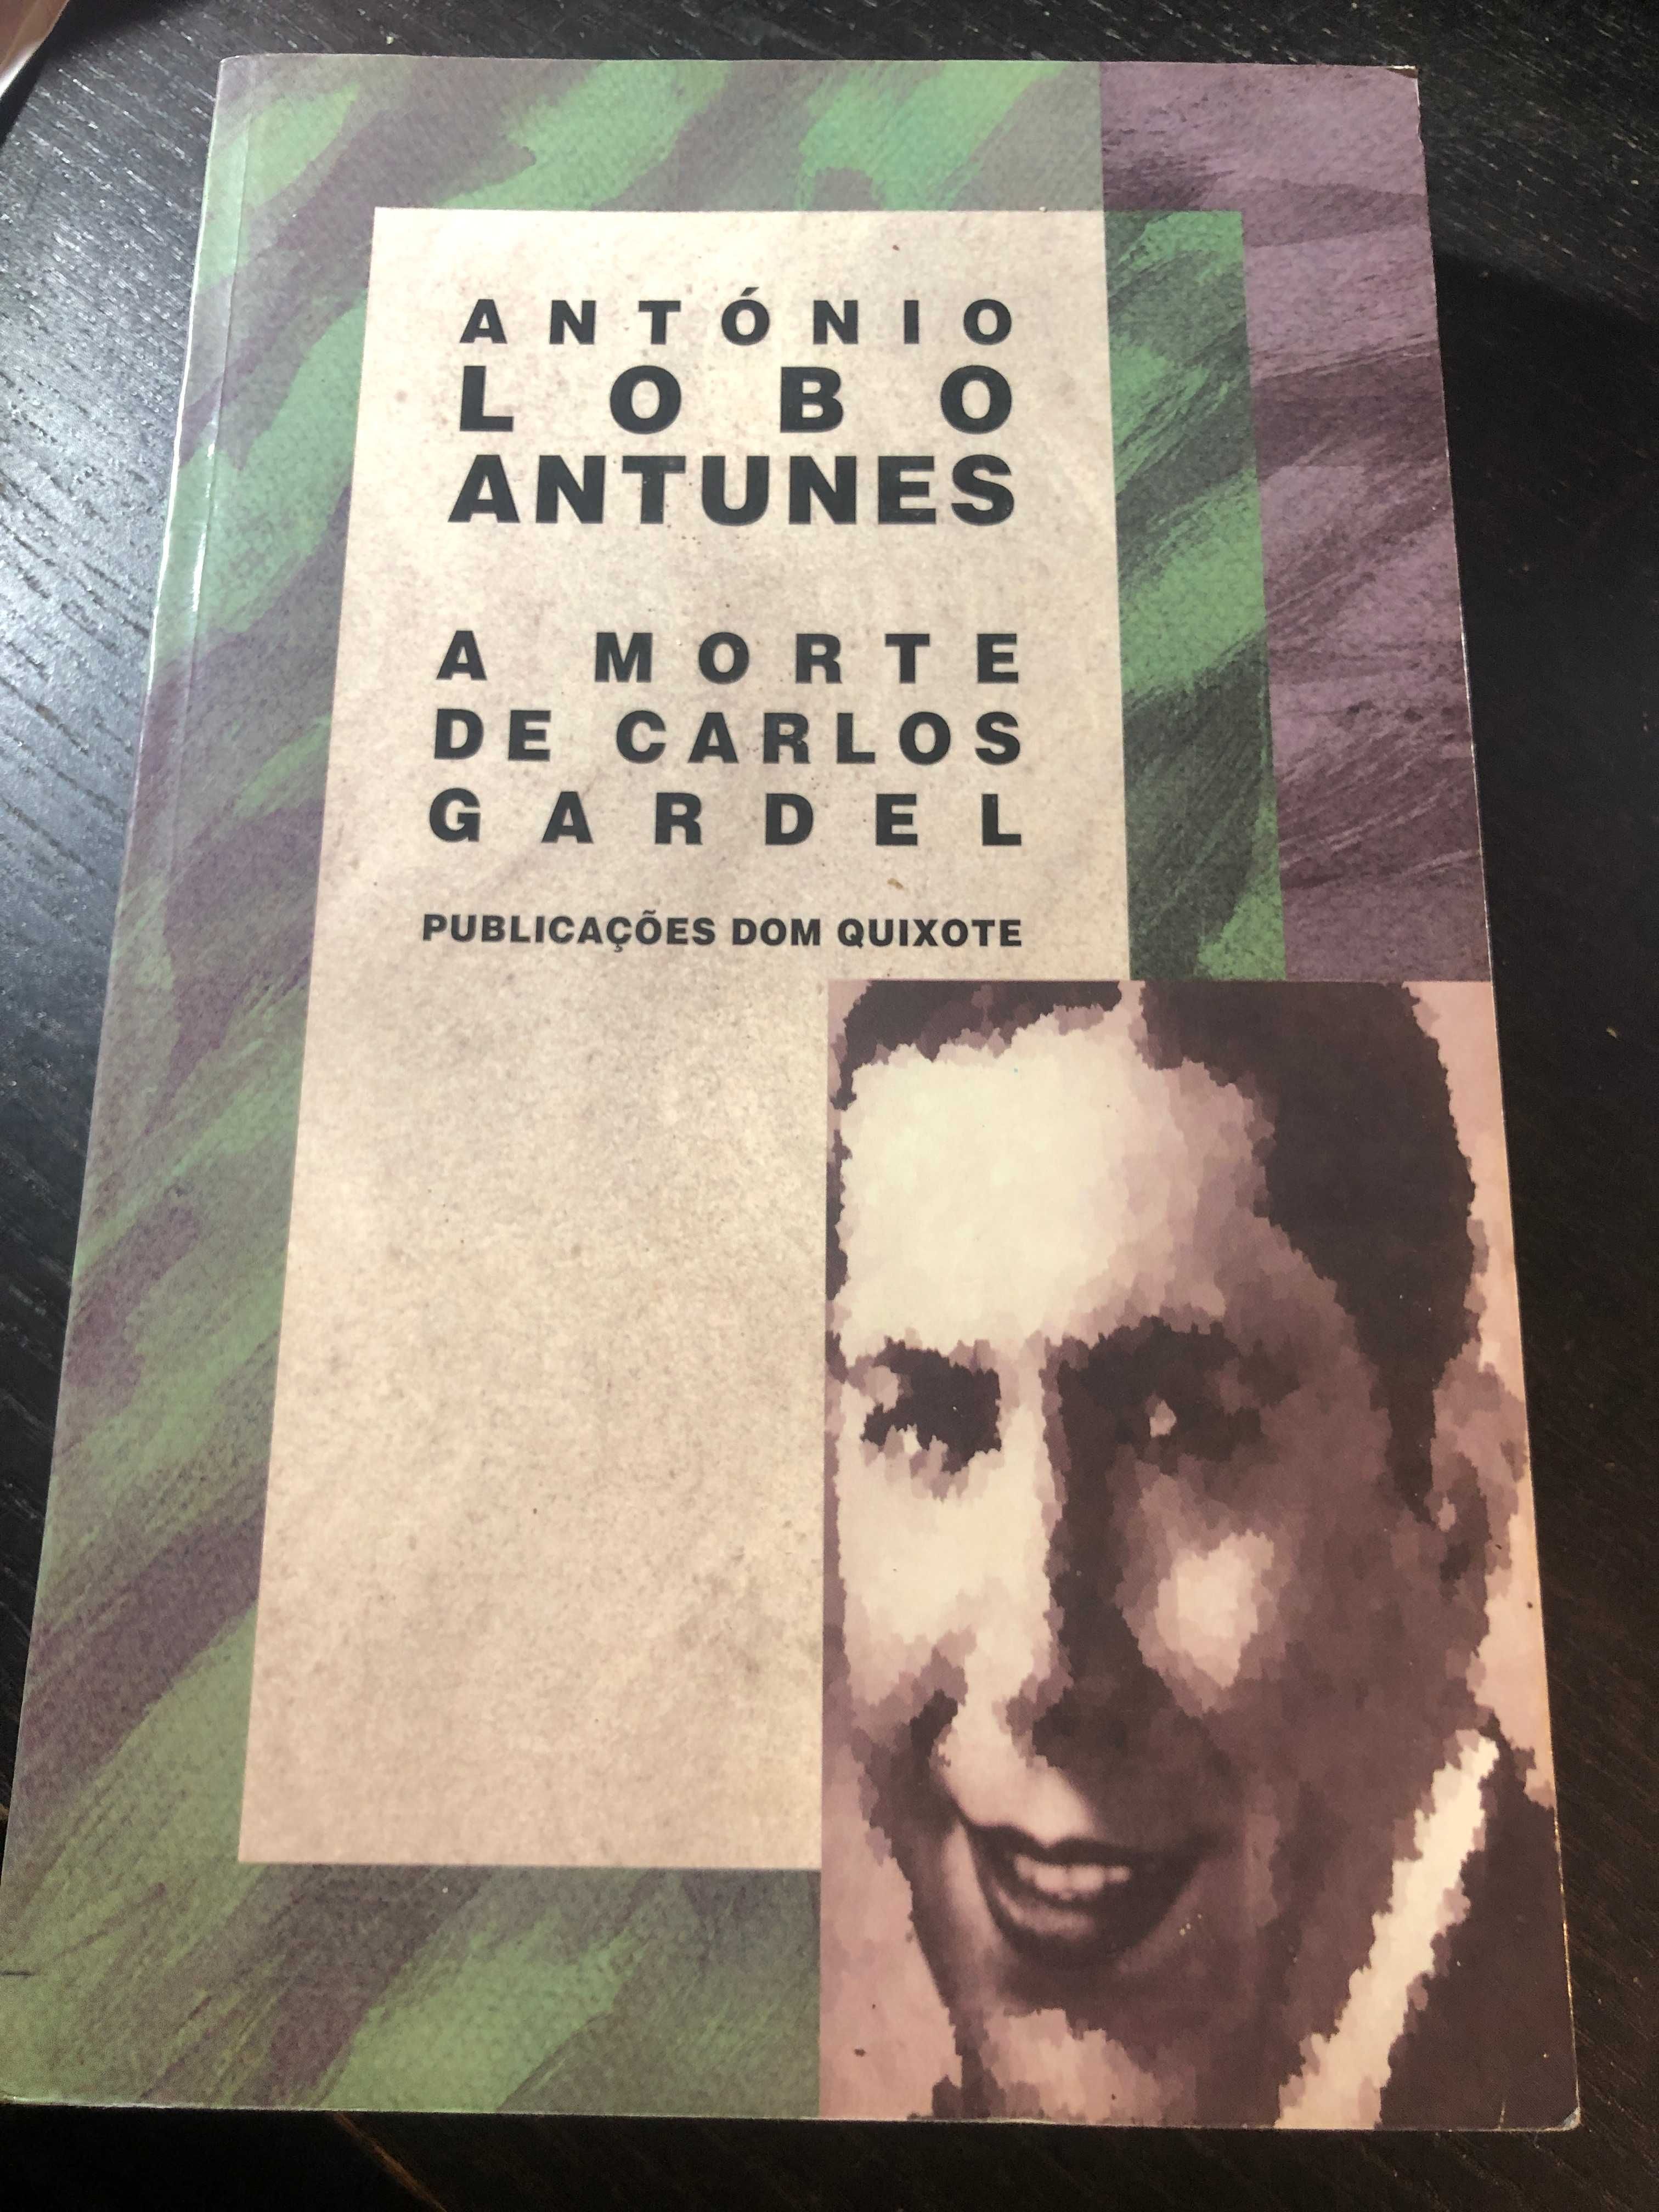 Livro "A morte de Carlos Gardel" de António Lobo Antunes